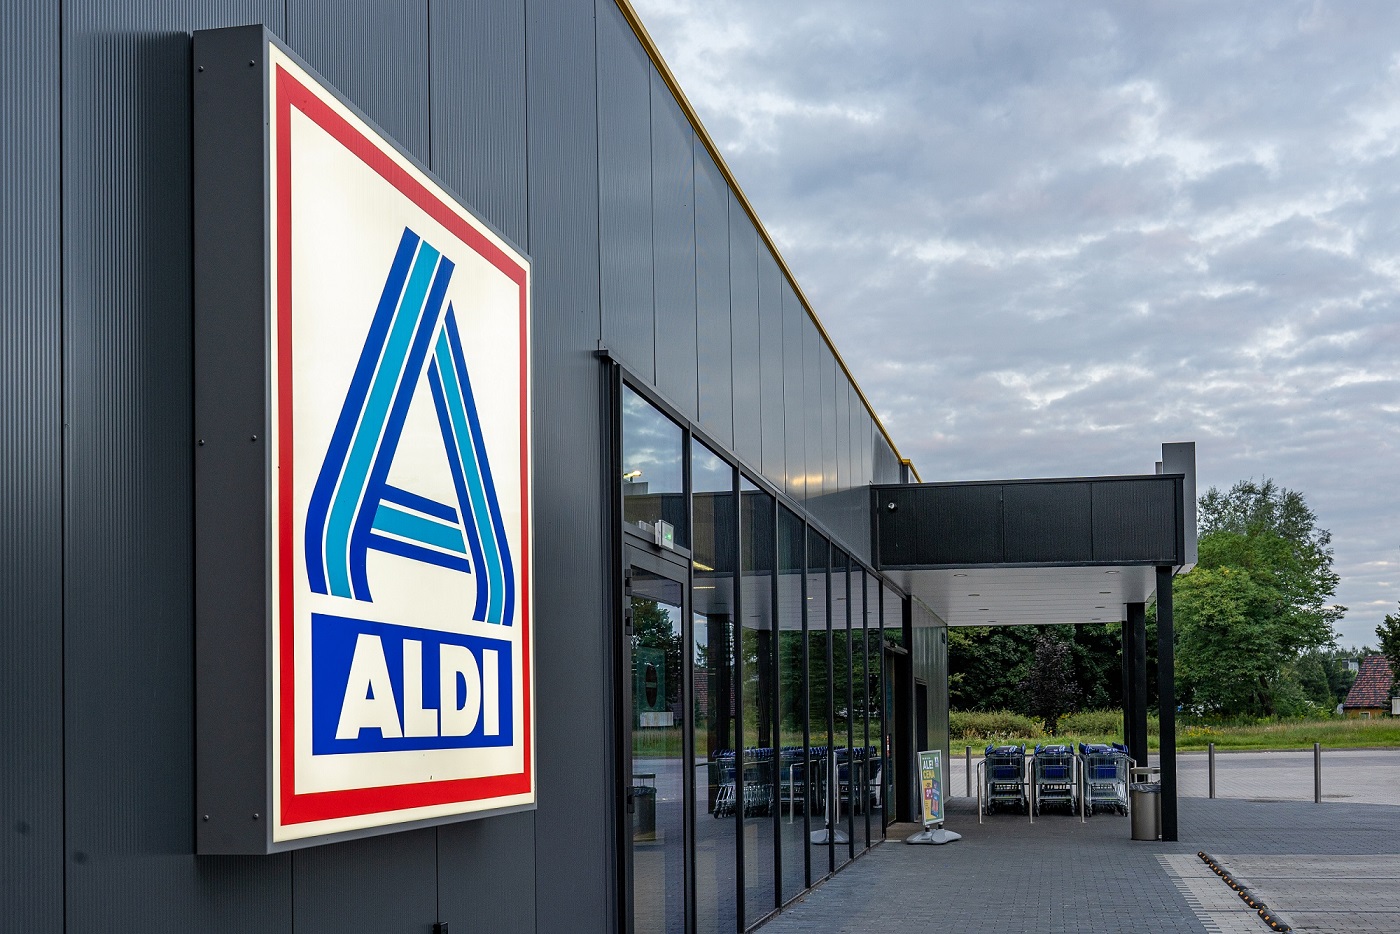 ALDI otwiera pierwszy sklep w Kobyłce